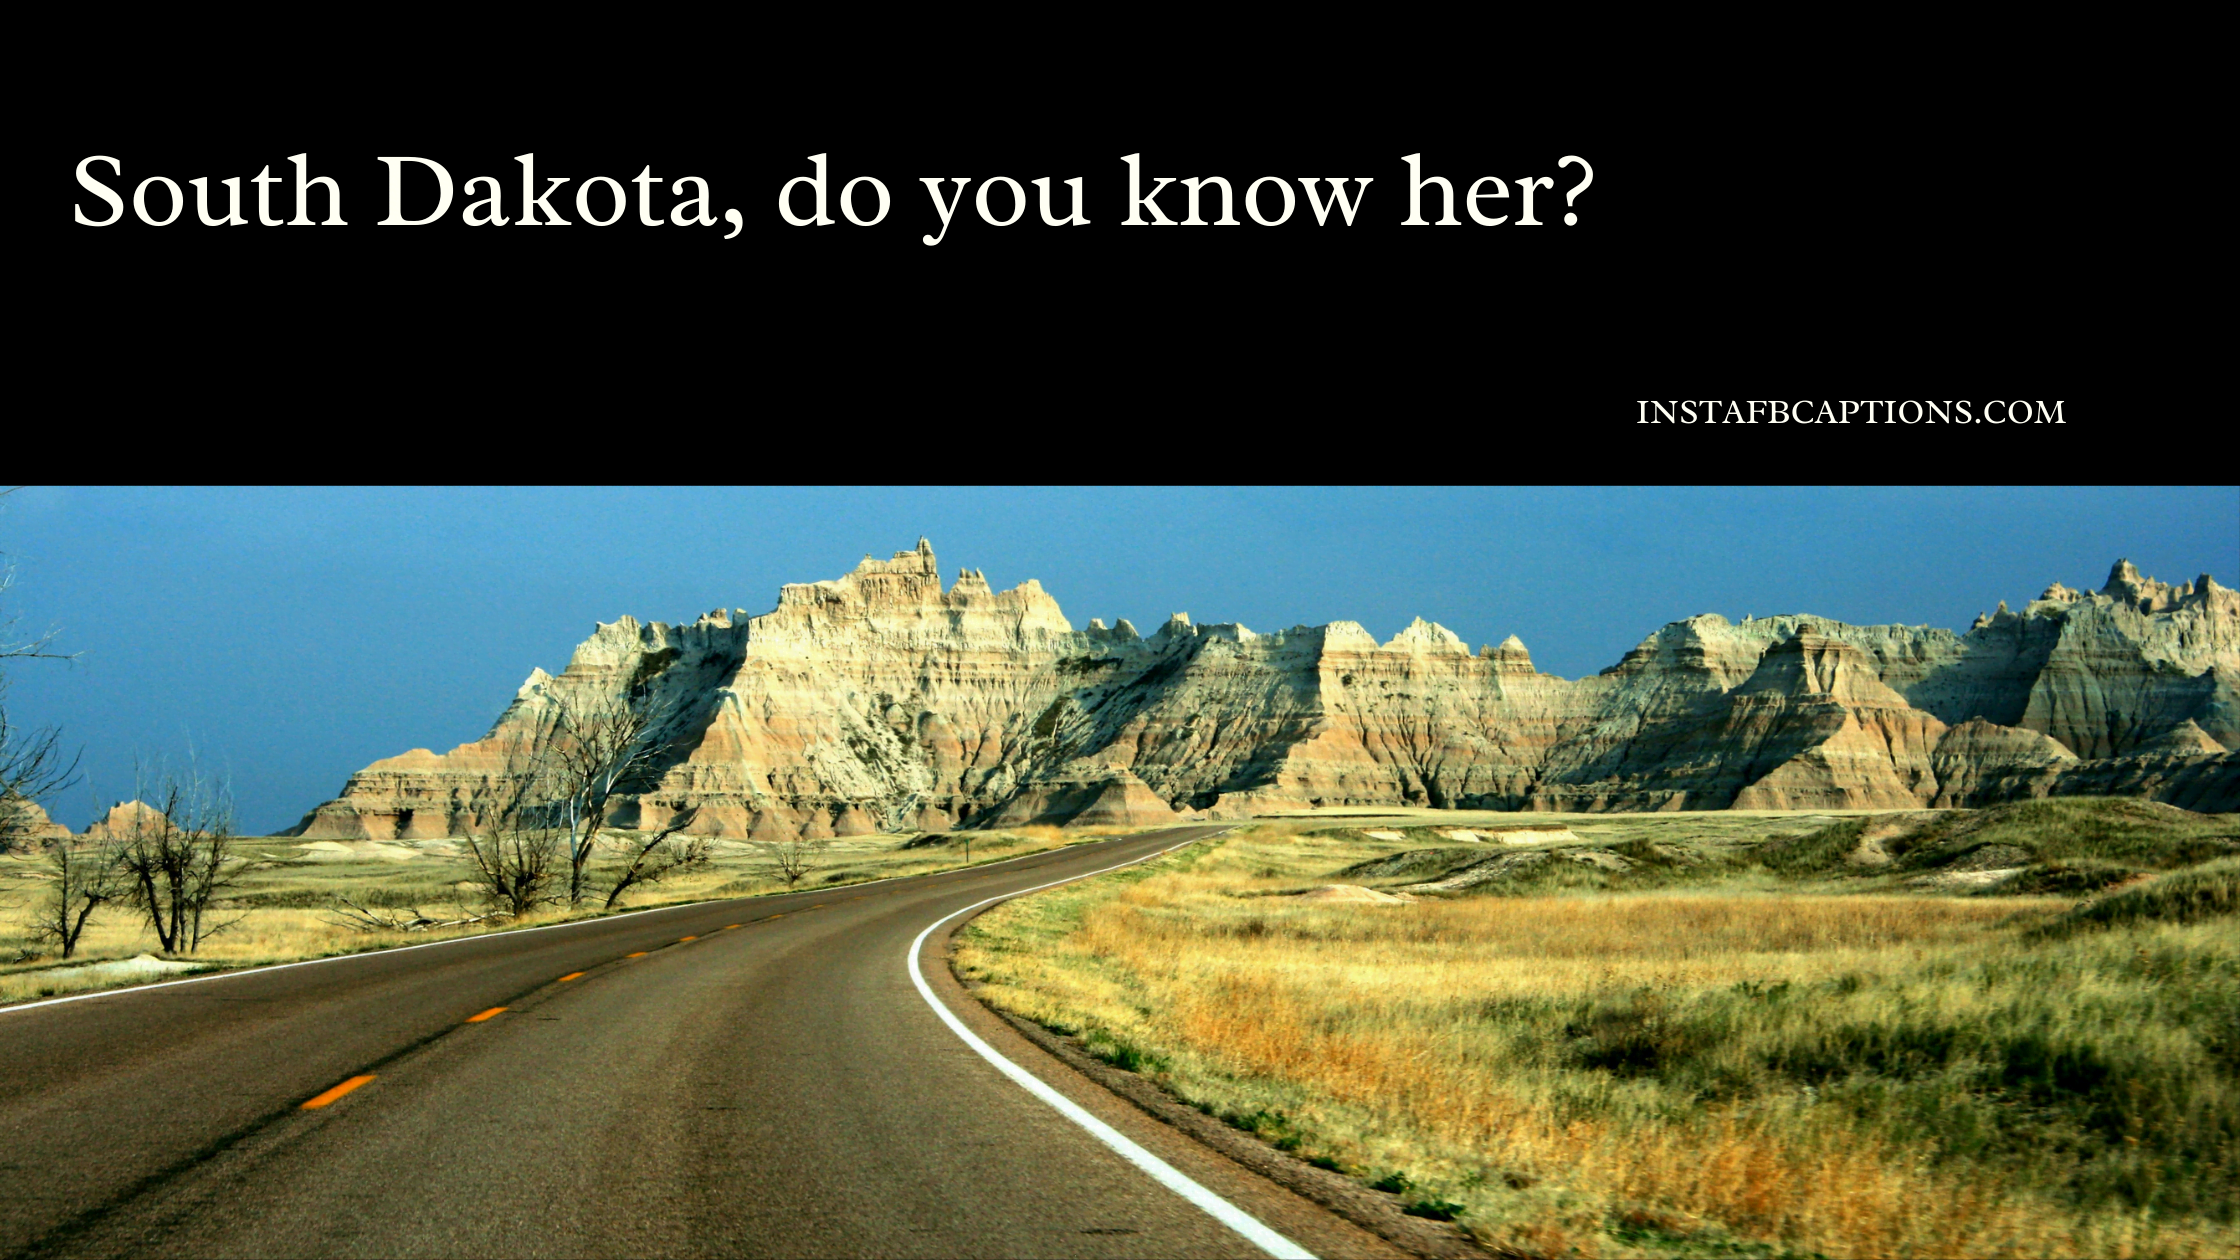 Short South Dakota Captions  - Short South Dakota Captions  - South Dakota Instagram Captions &#038; Quotes in 2022